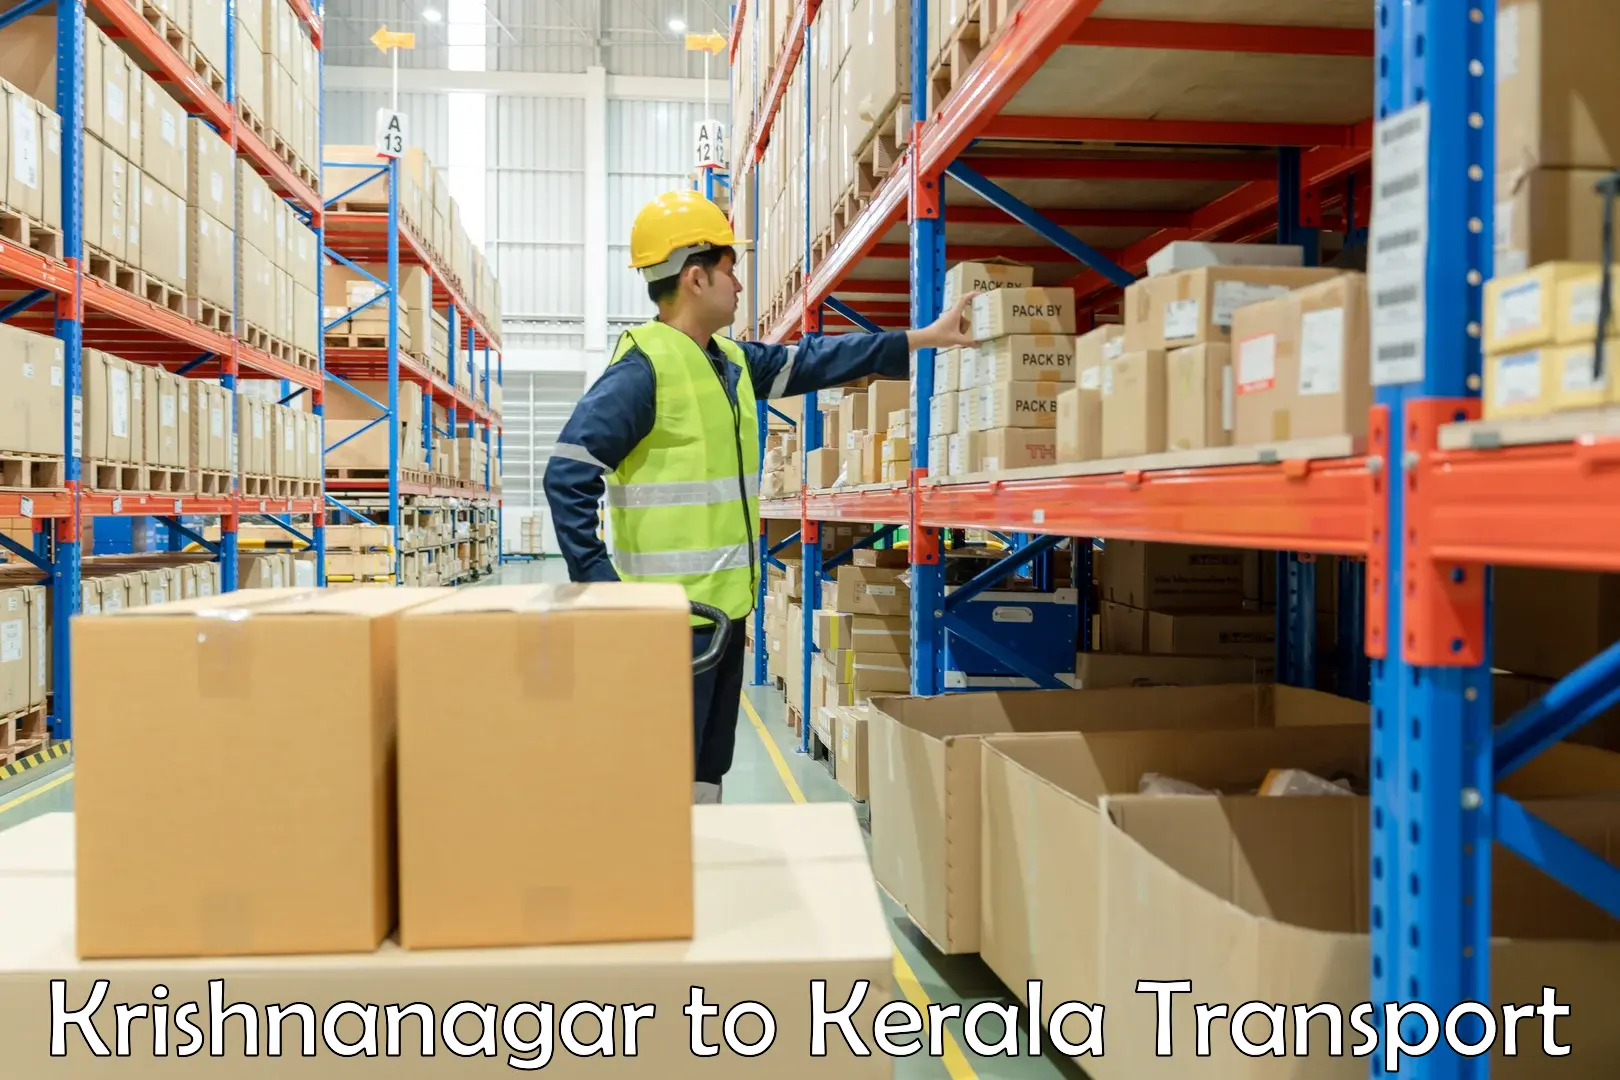 International cargo transportation services Krishnanagar to Kannapuram